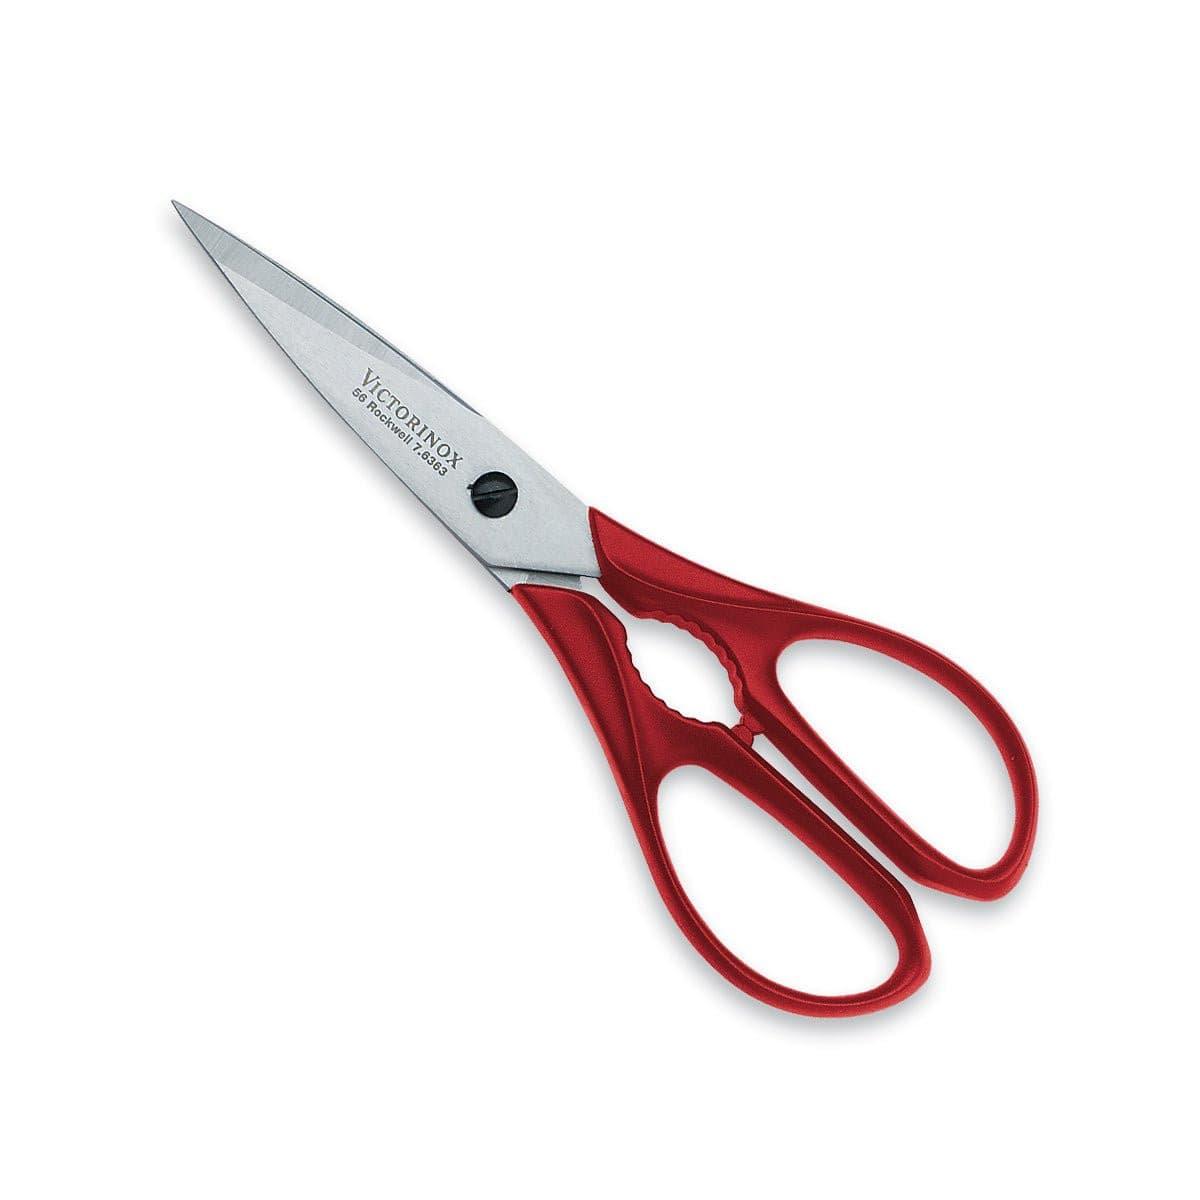 Victorinox household scissors for left handed, length 16 cm